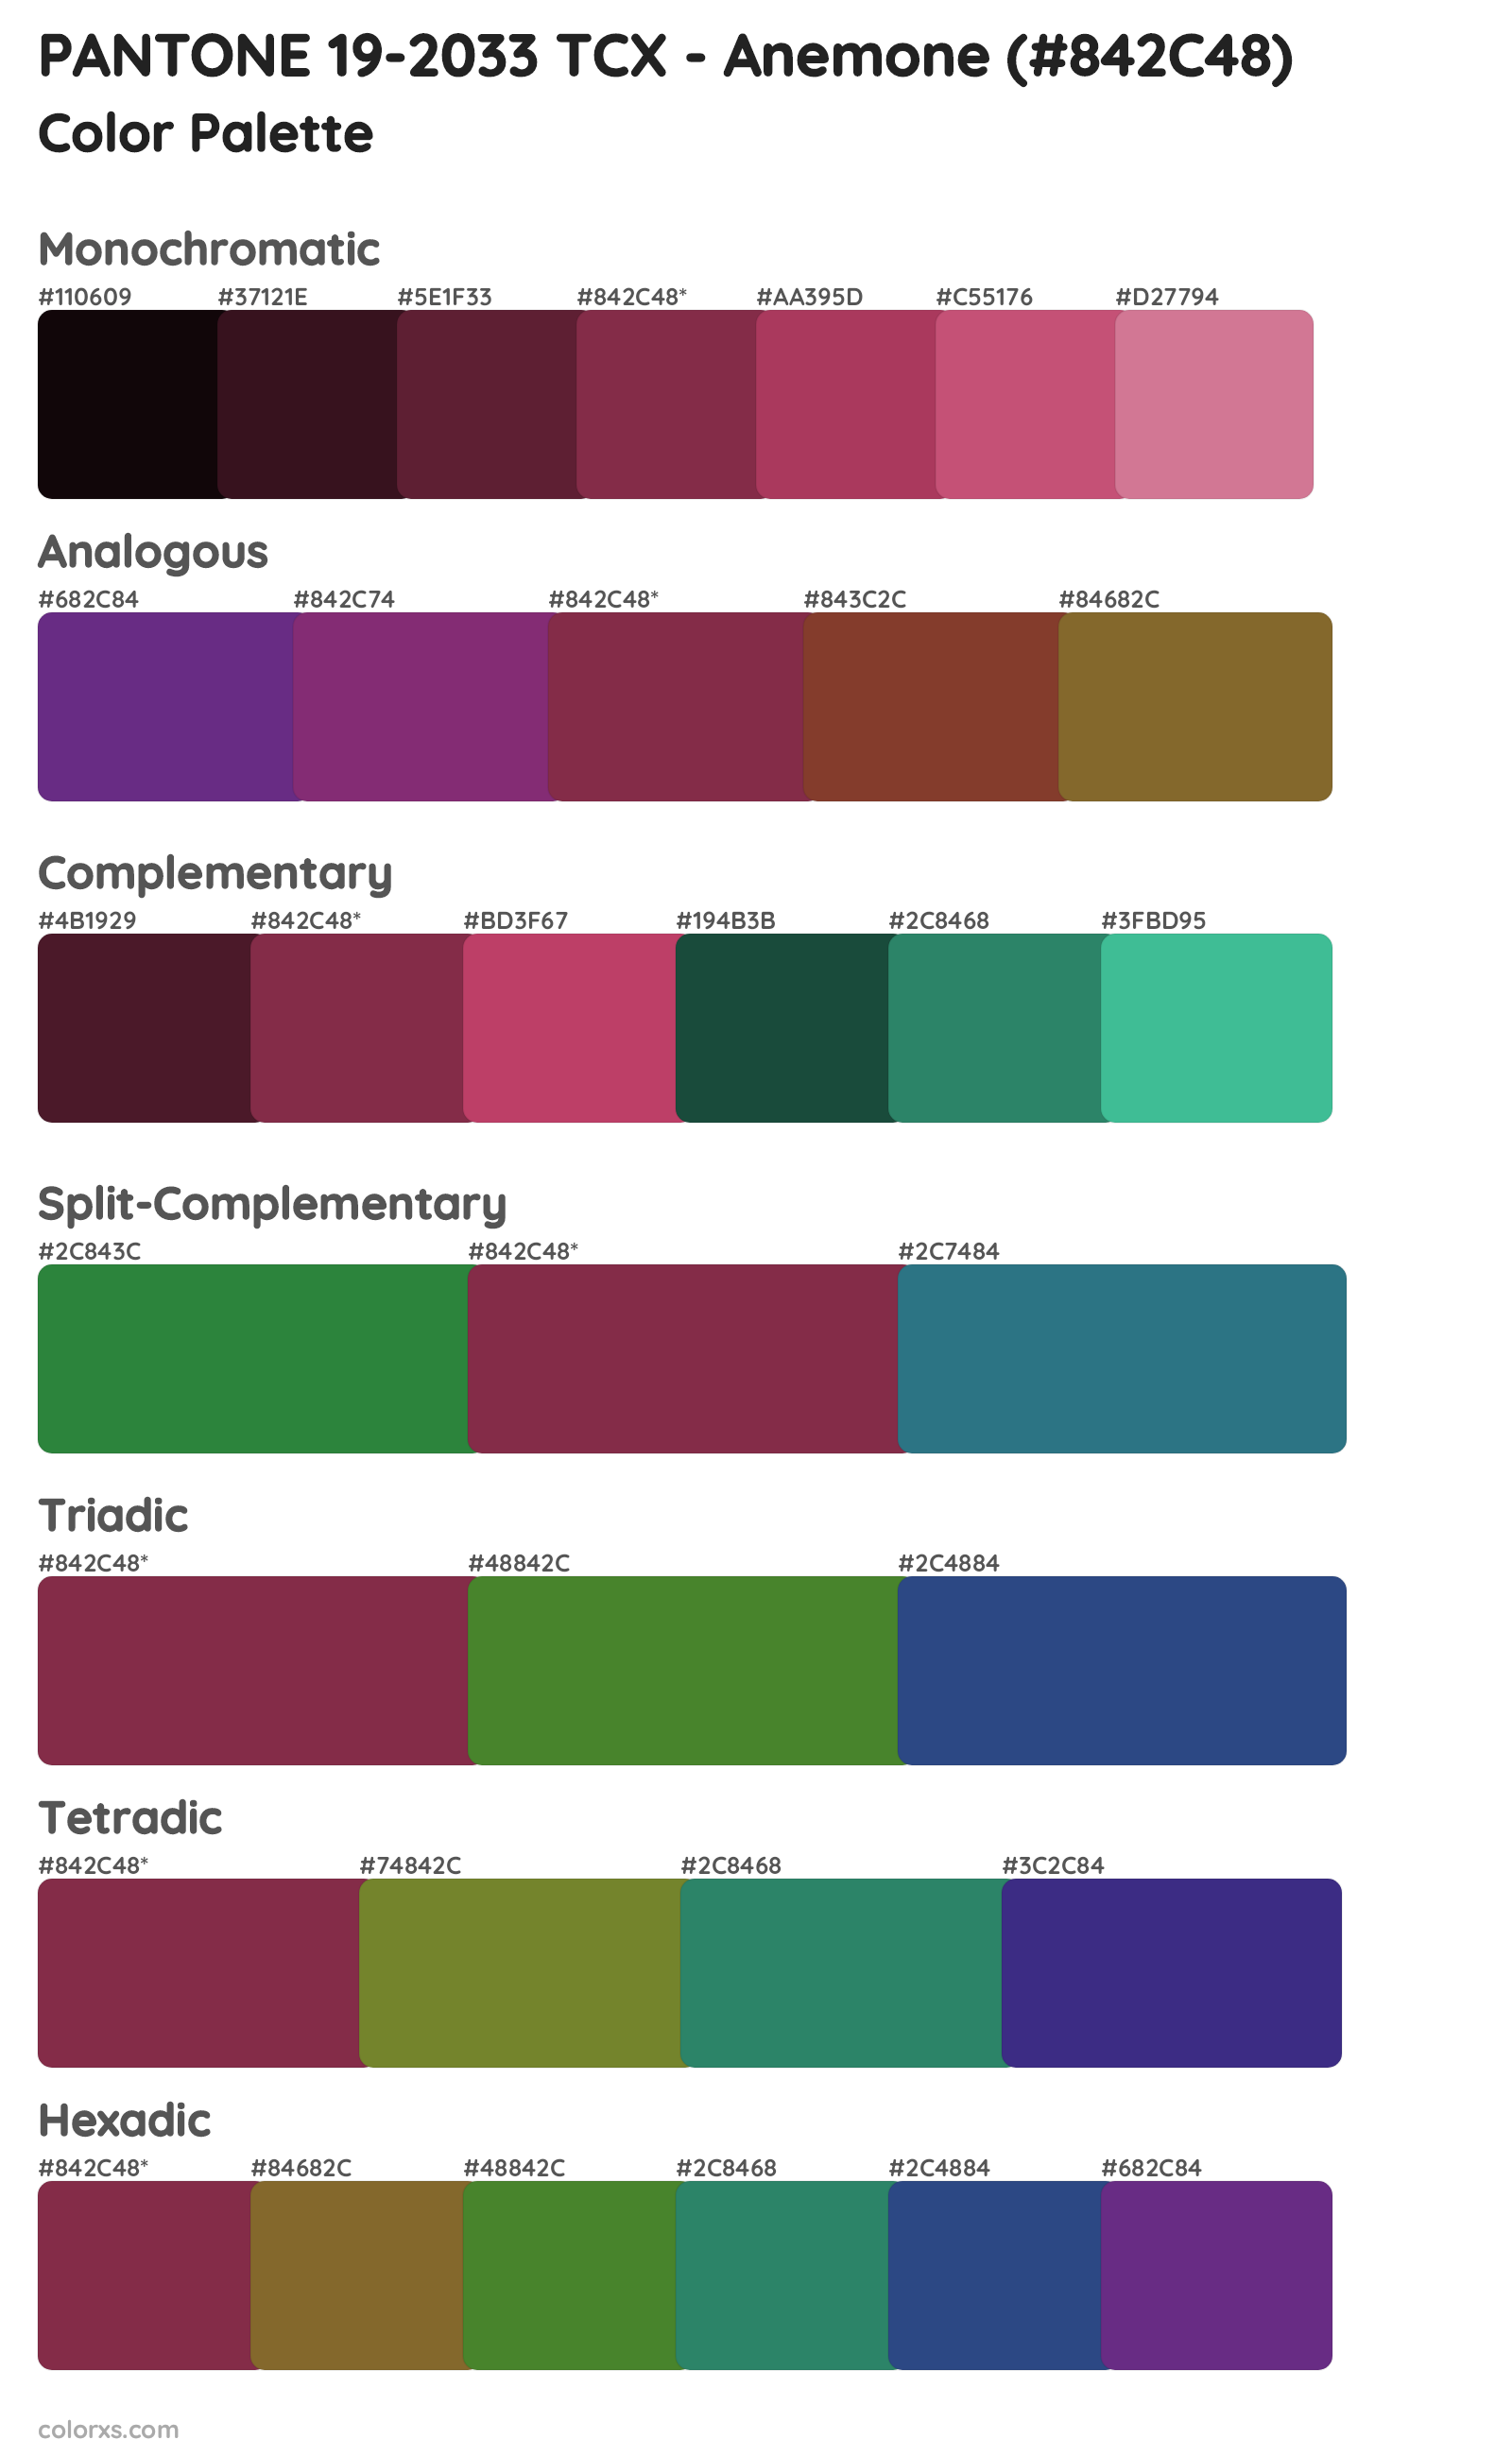 PANTONE 19-2033 TCX - Anemone Color Scheme Palettes